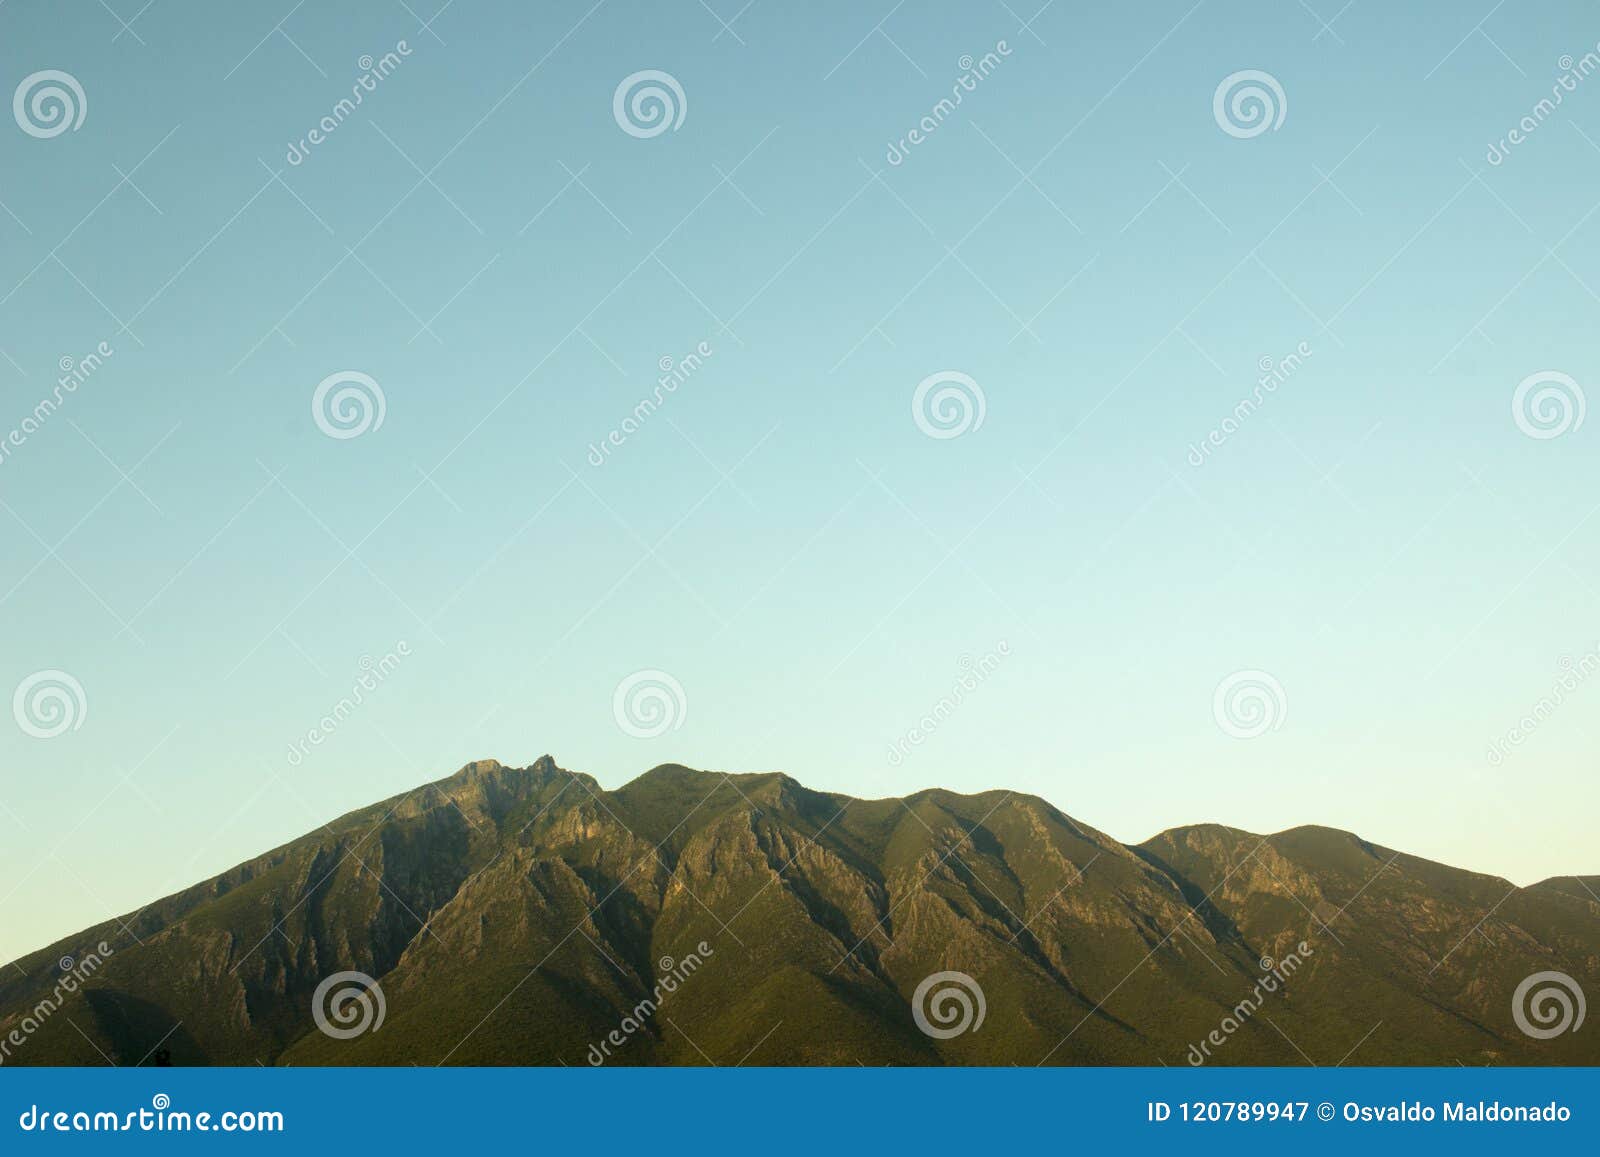 side view of the cerro de la silla mountain.